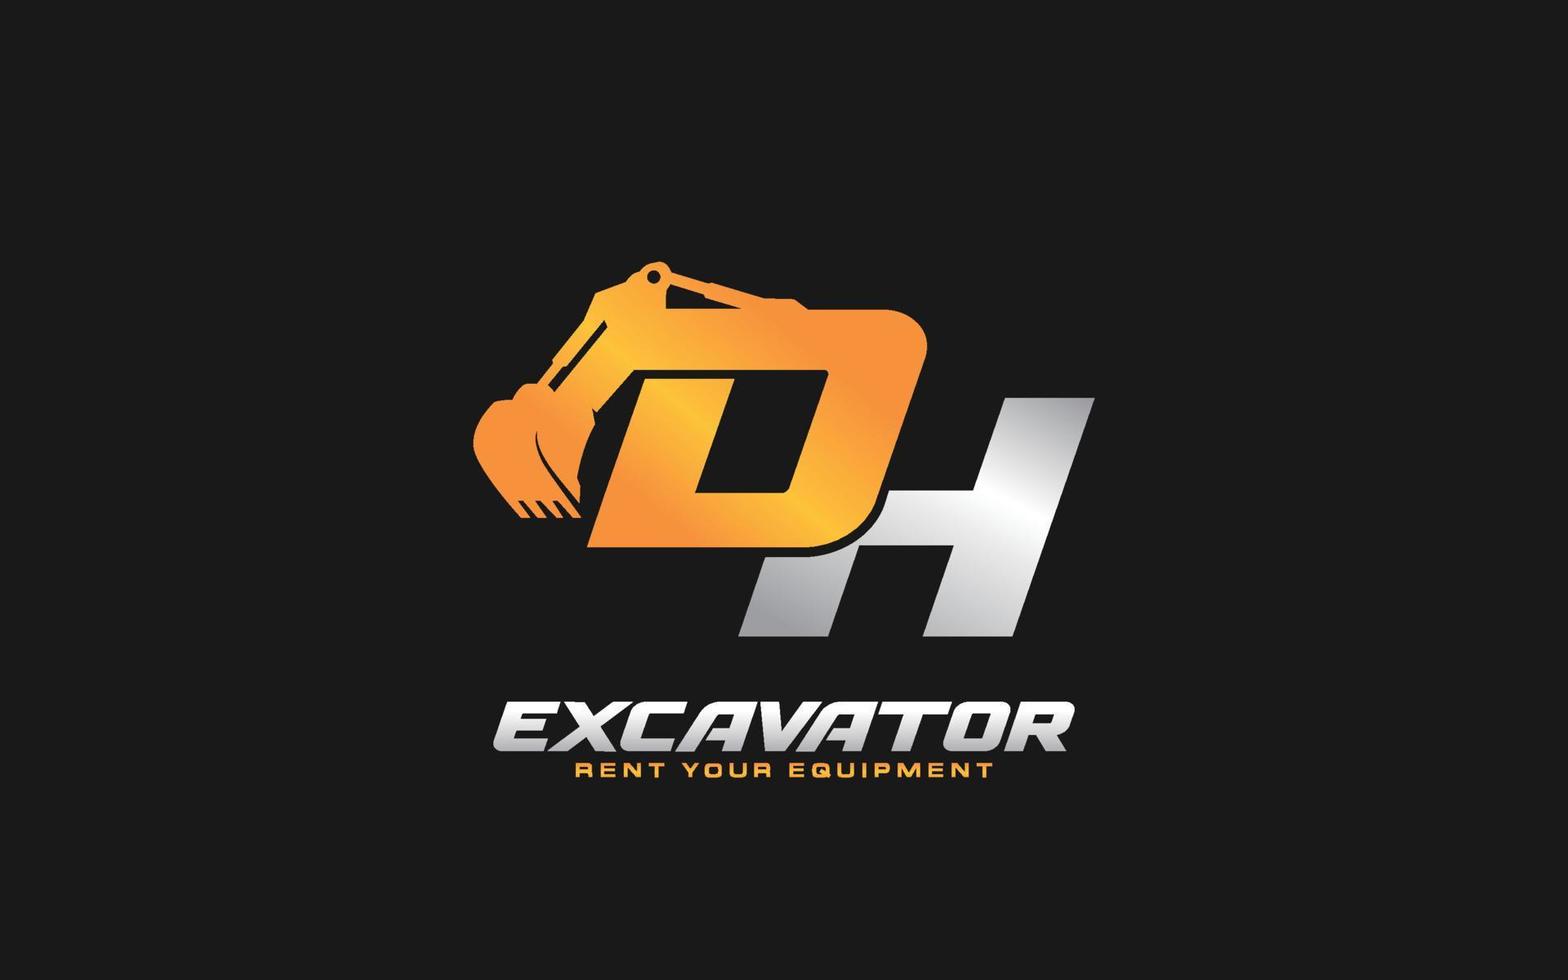 Excavadora con logotipo dh para empresa constructora. ilustración de vector de plantilla de equipo pesado para su marca.